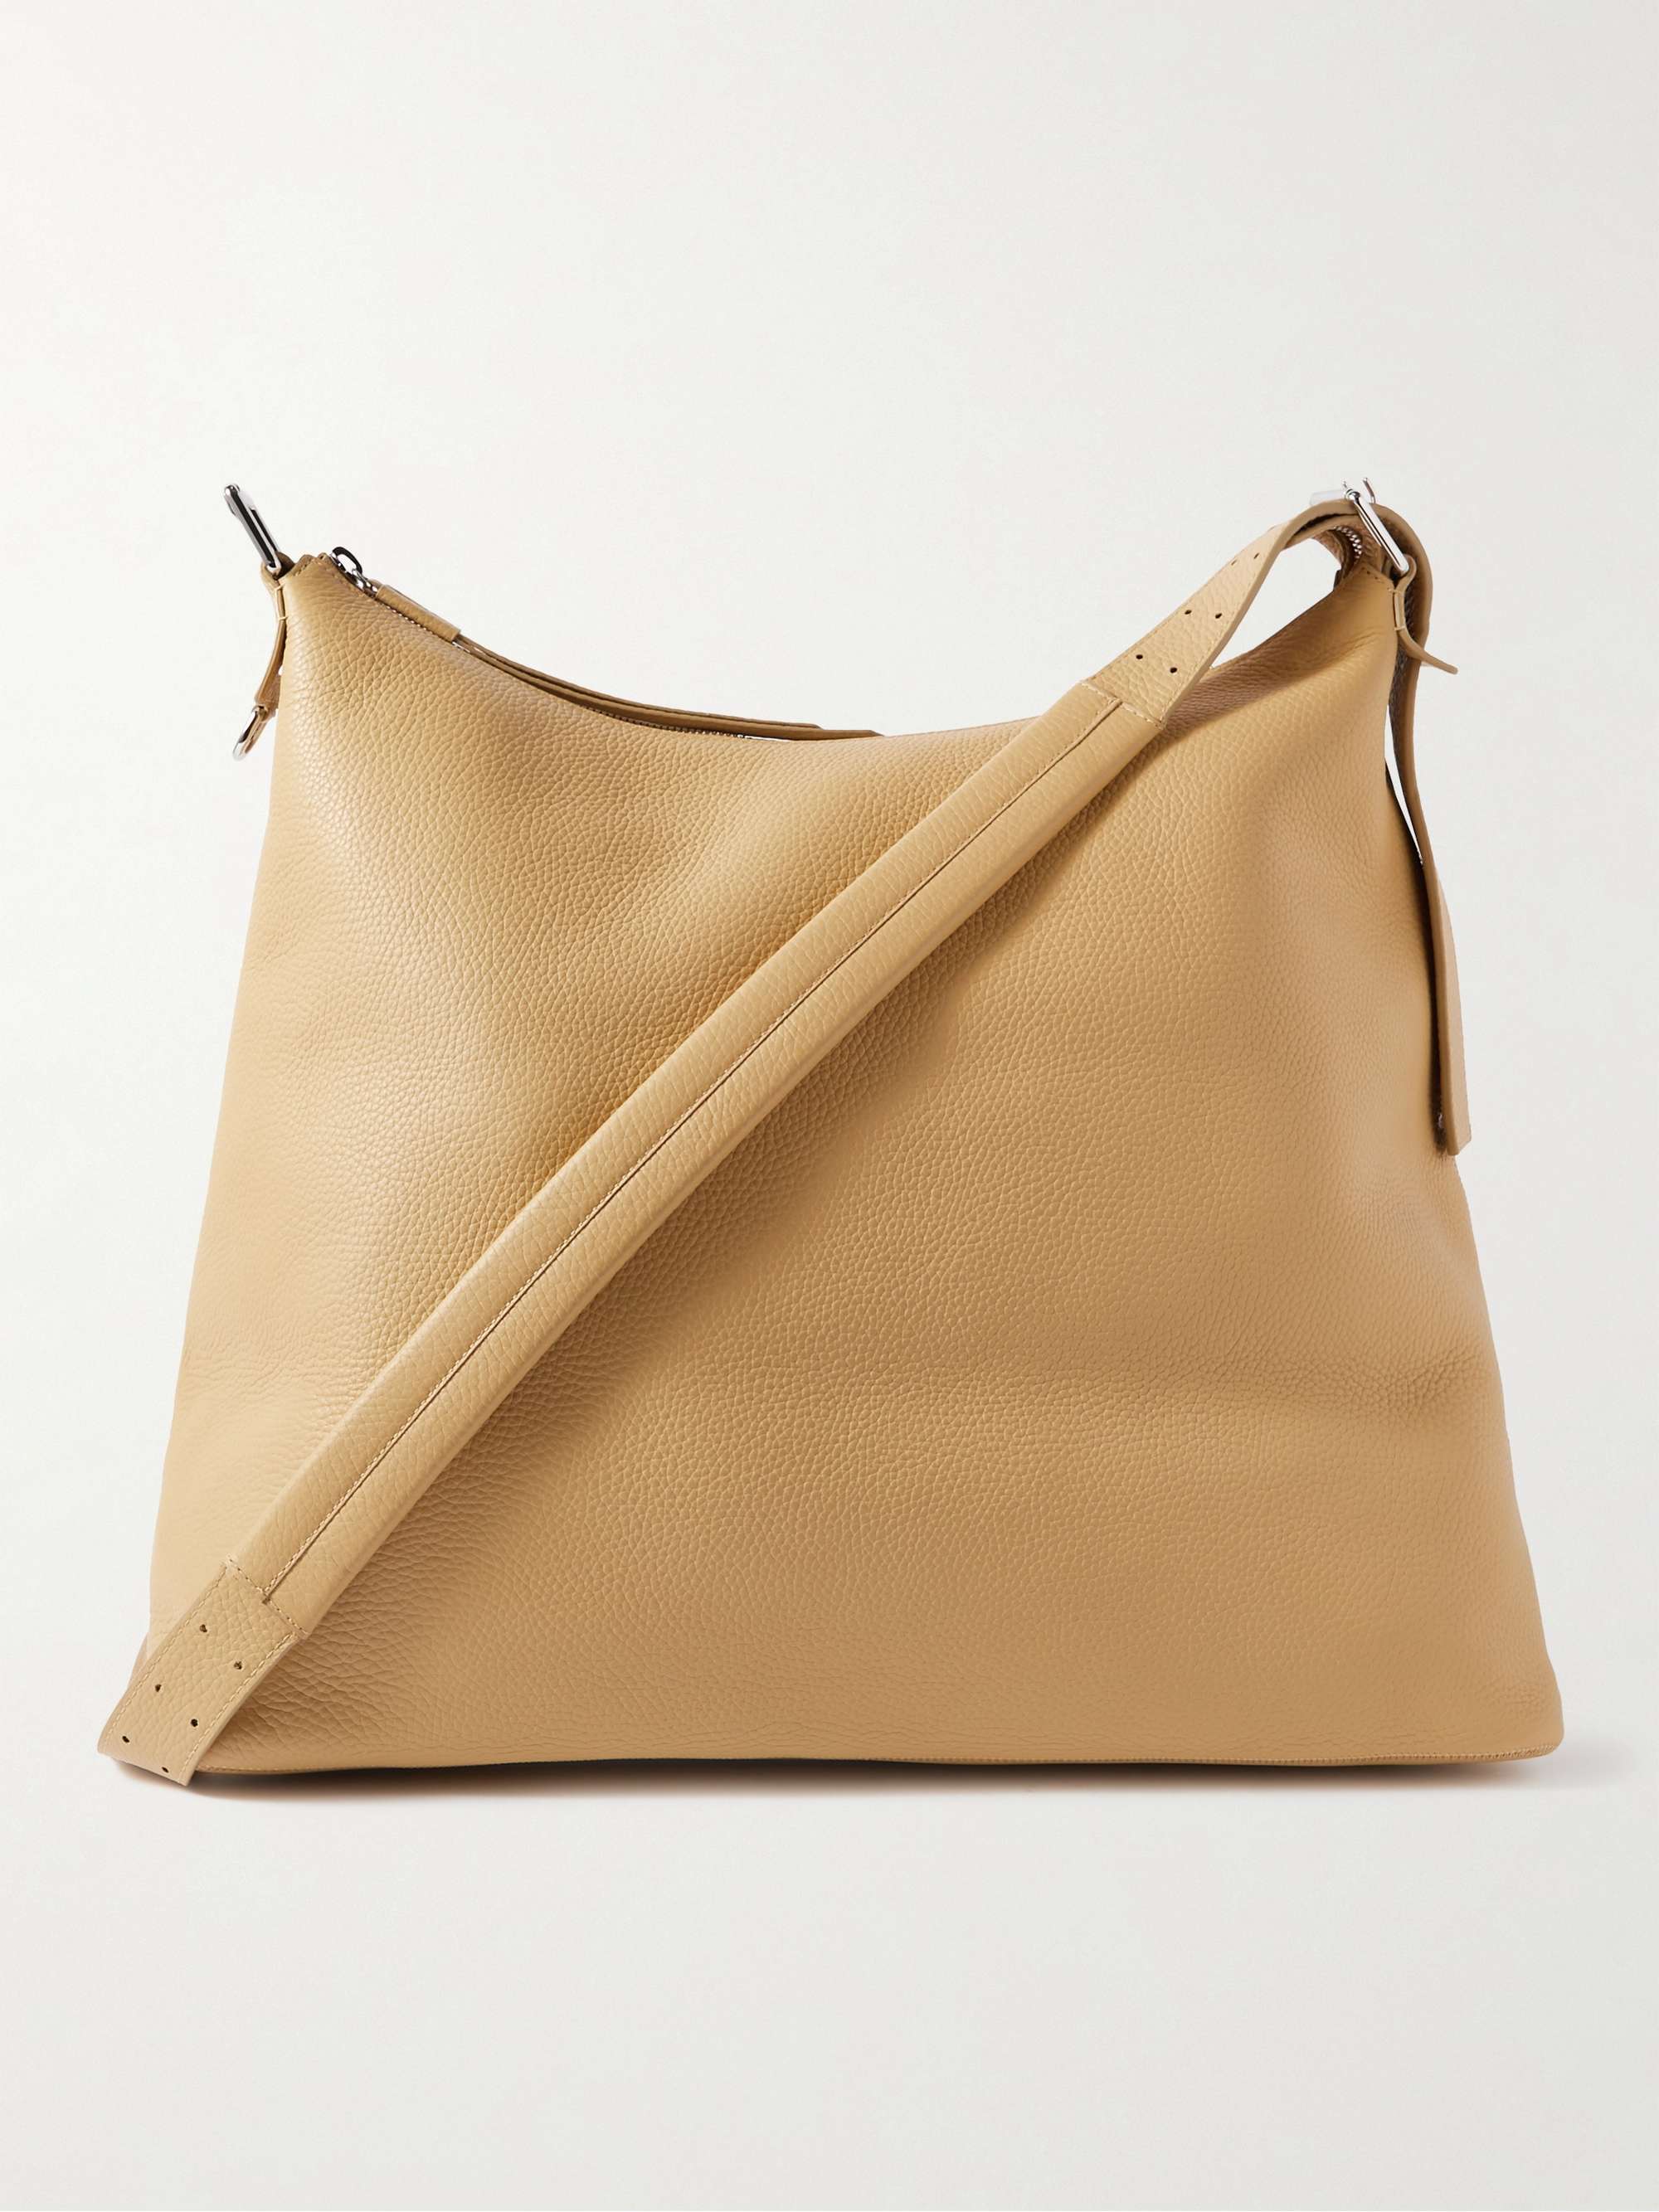 Full-Grain Leather Messenger Bag